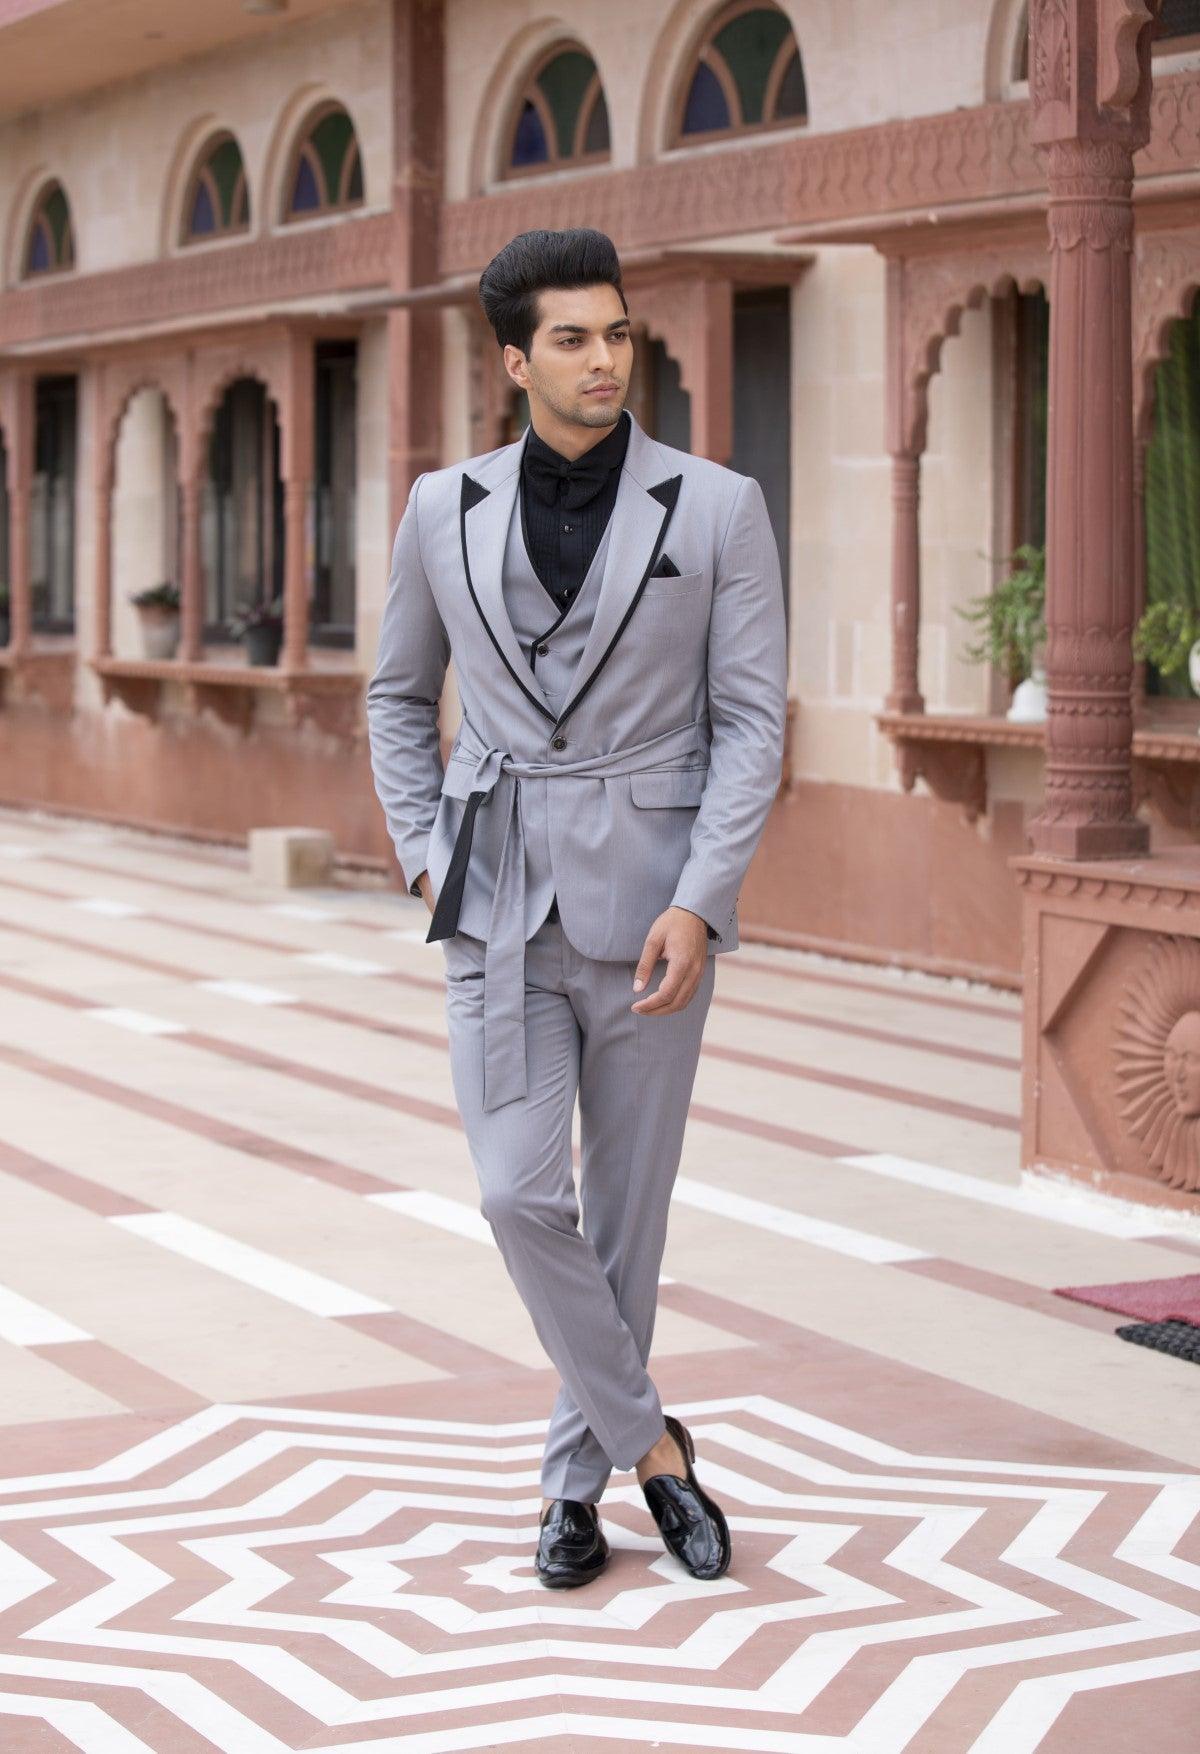 Premium Classic Black & Gray Suit Set